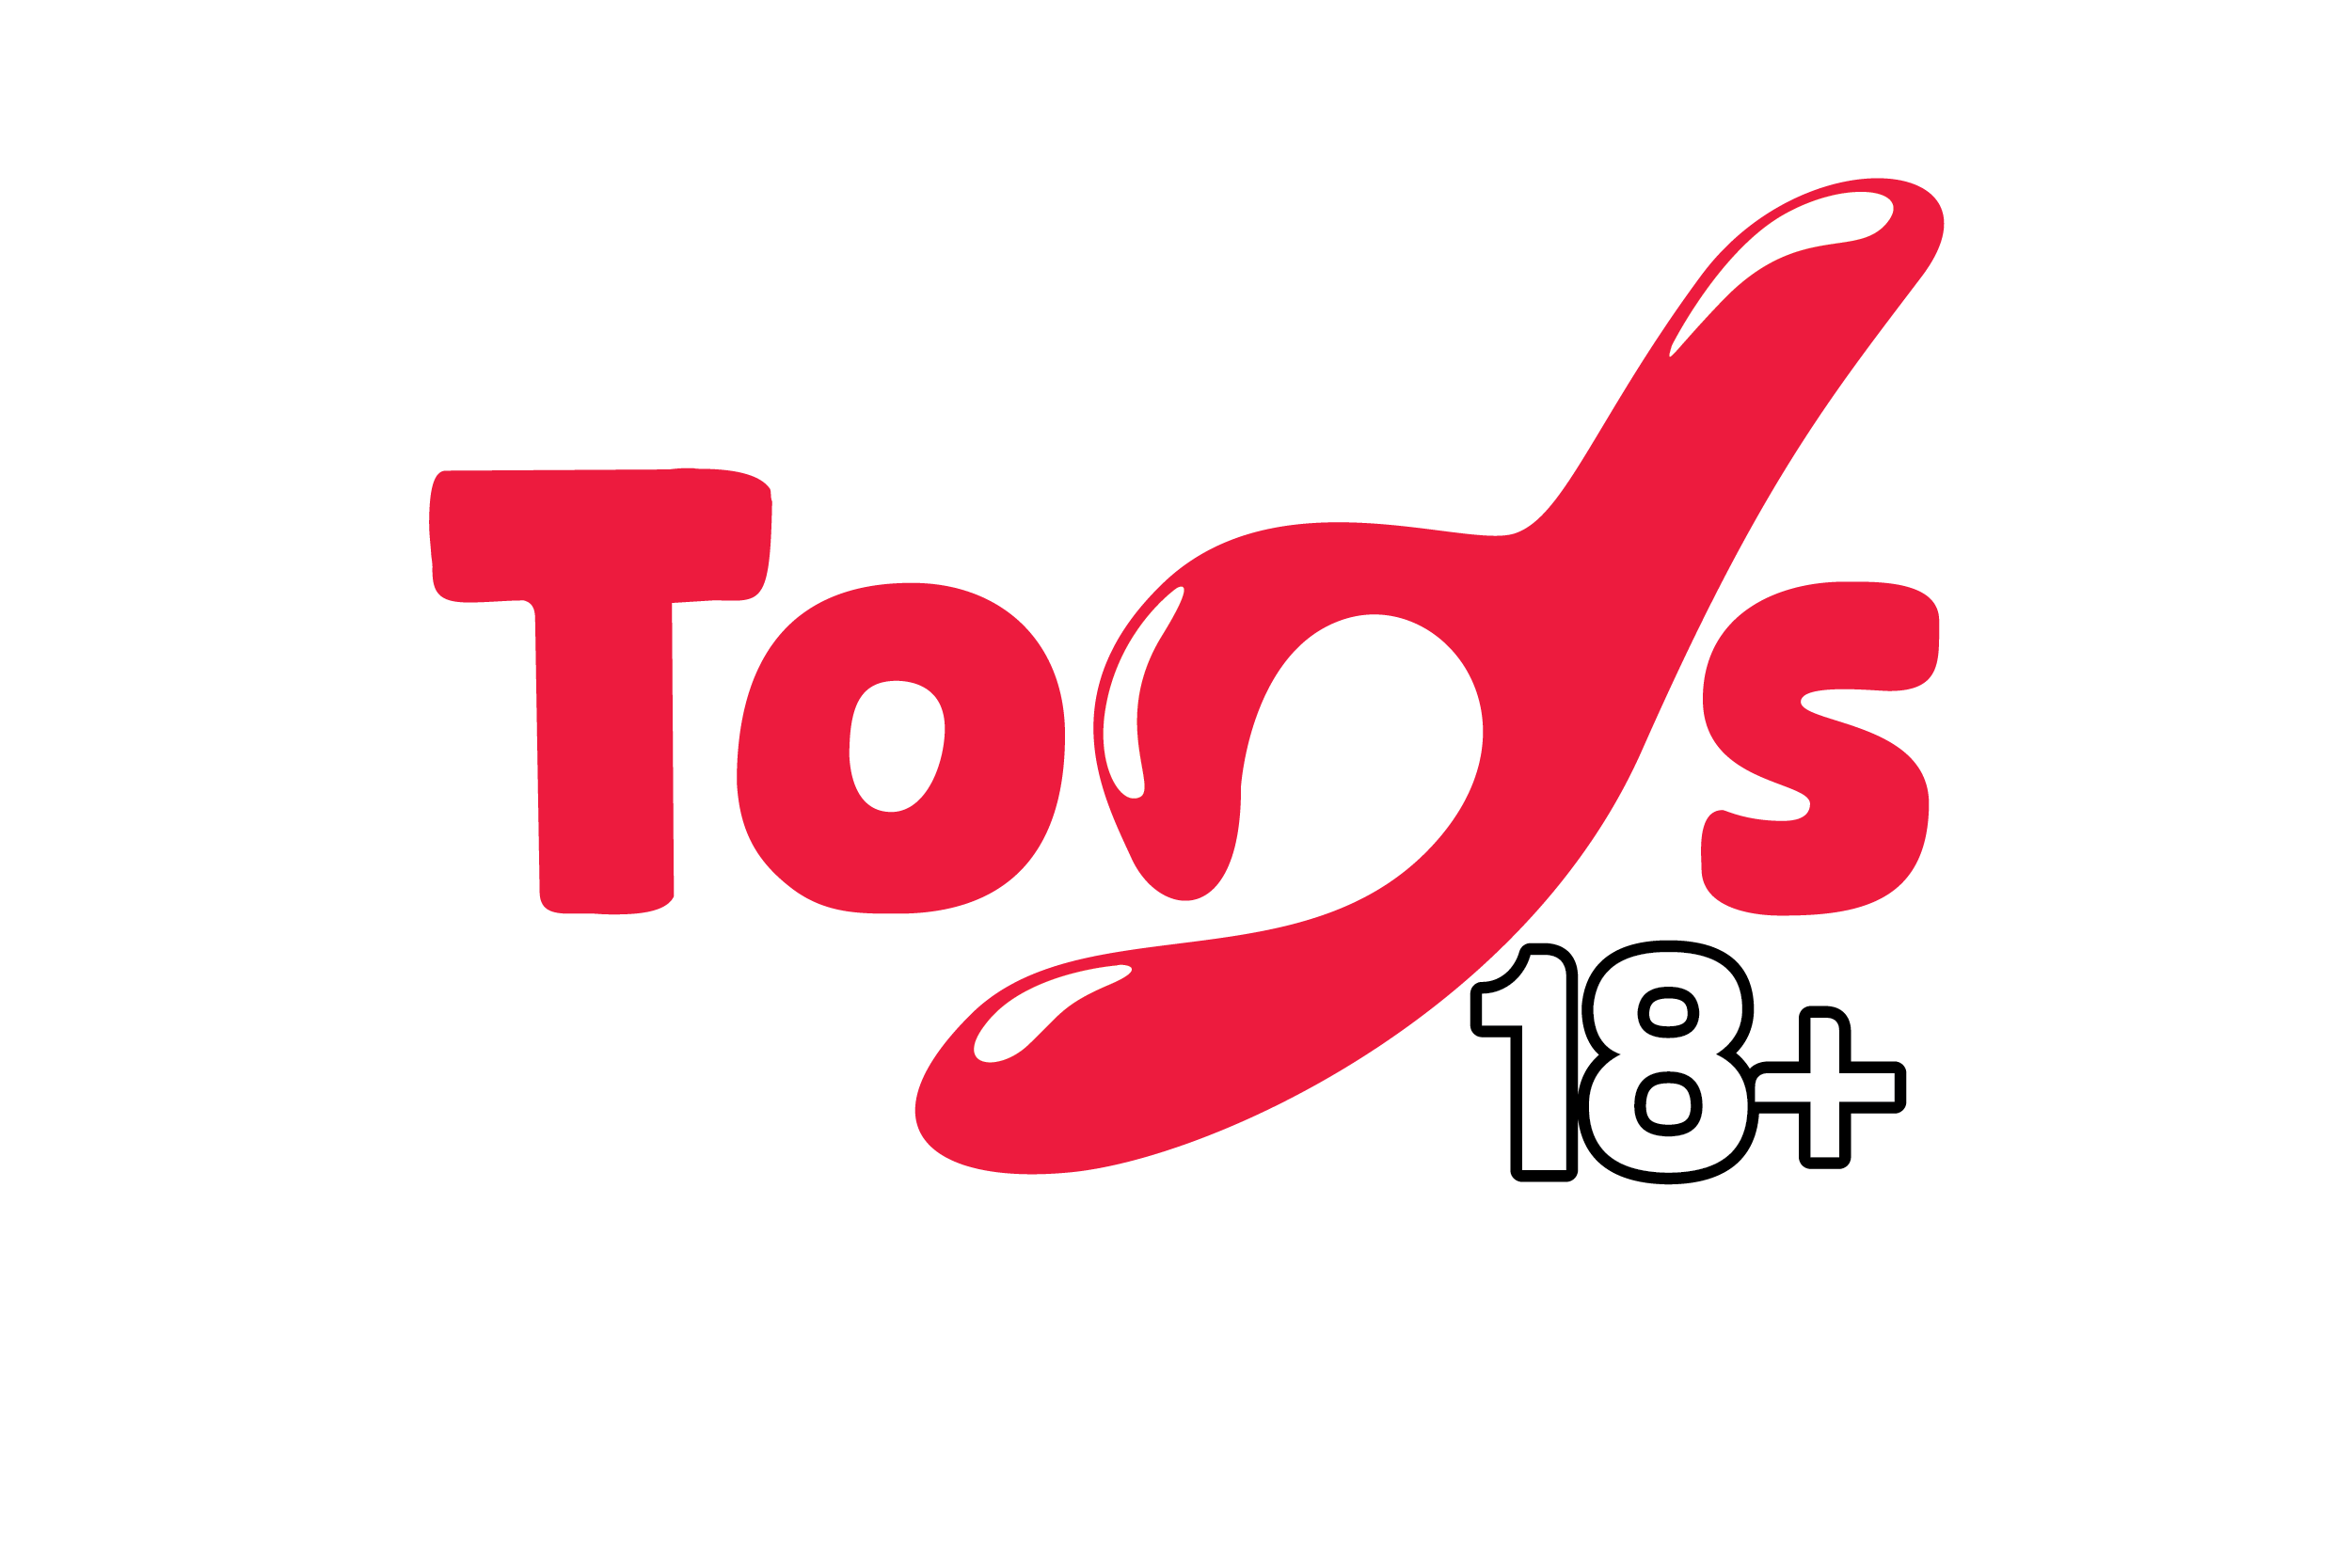 Toys 18+